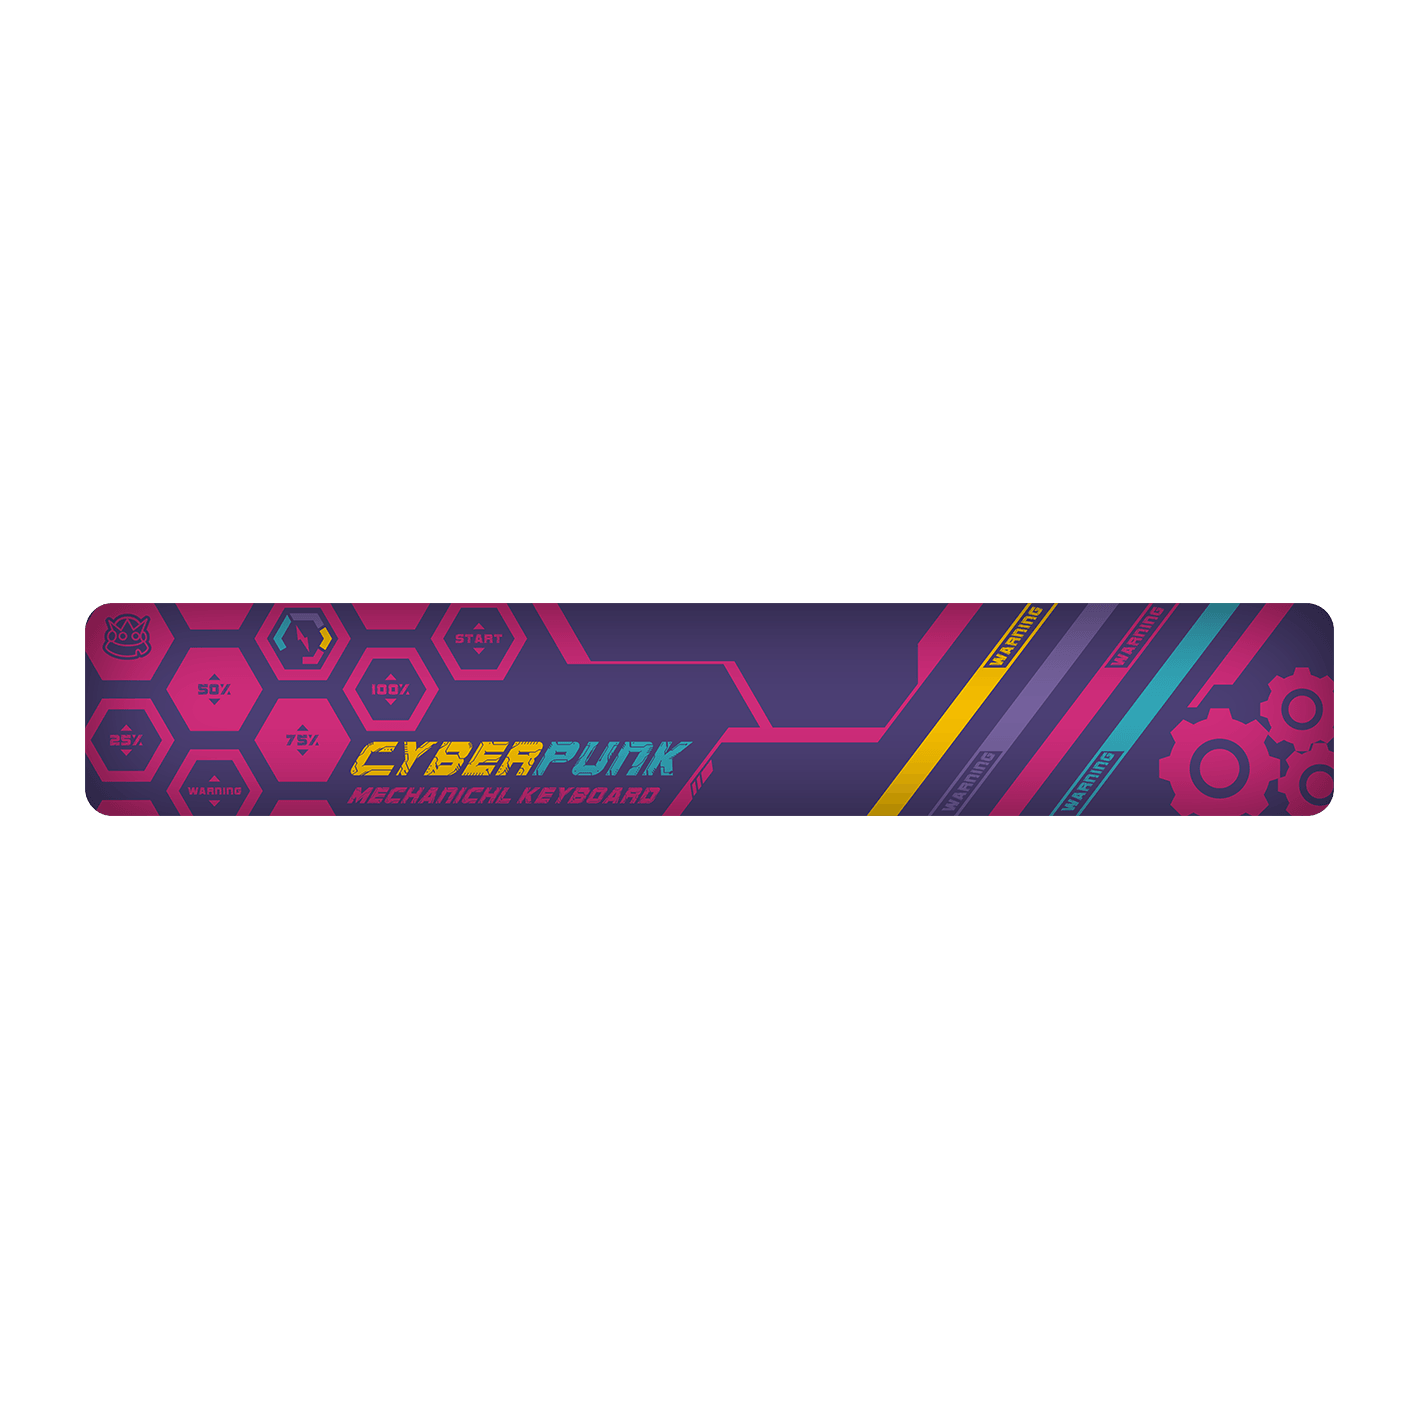 dustsilver™ Keyboard Wrist Rest Purple Cyberpunk Style Pattern - dustsilver